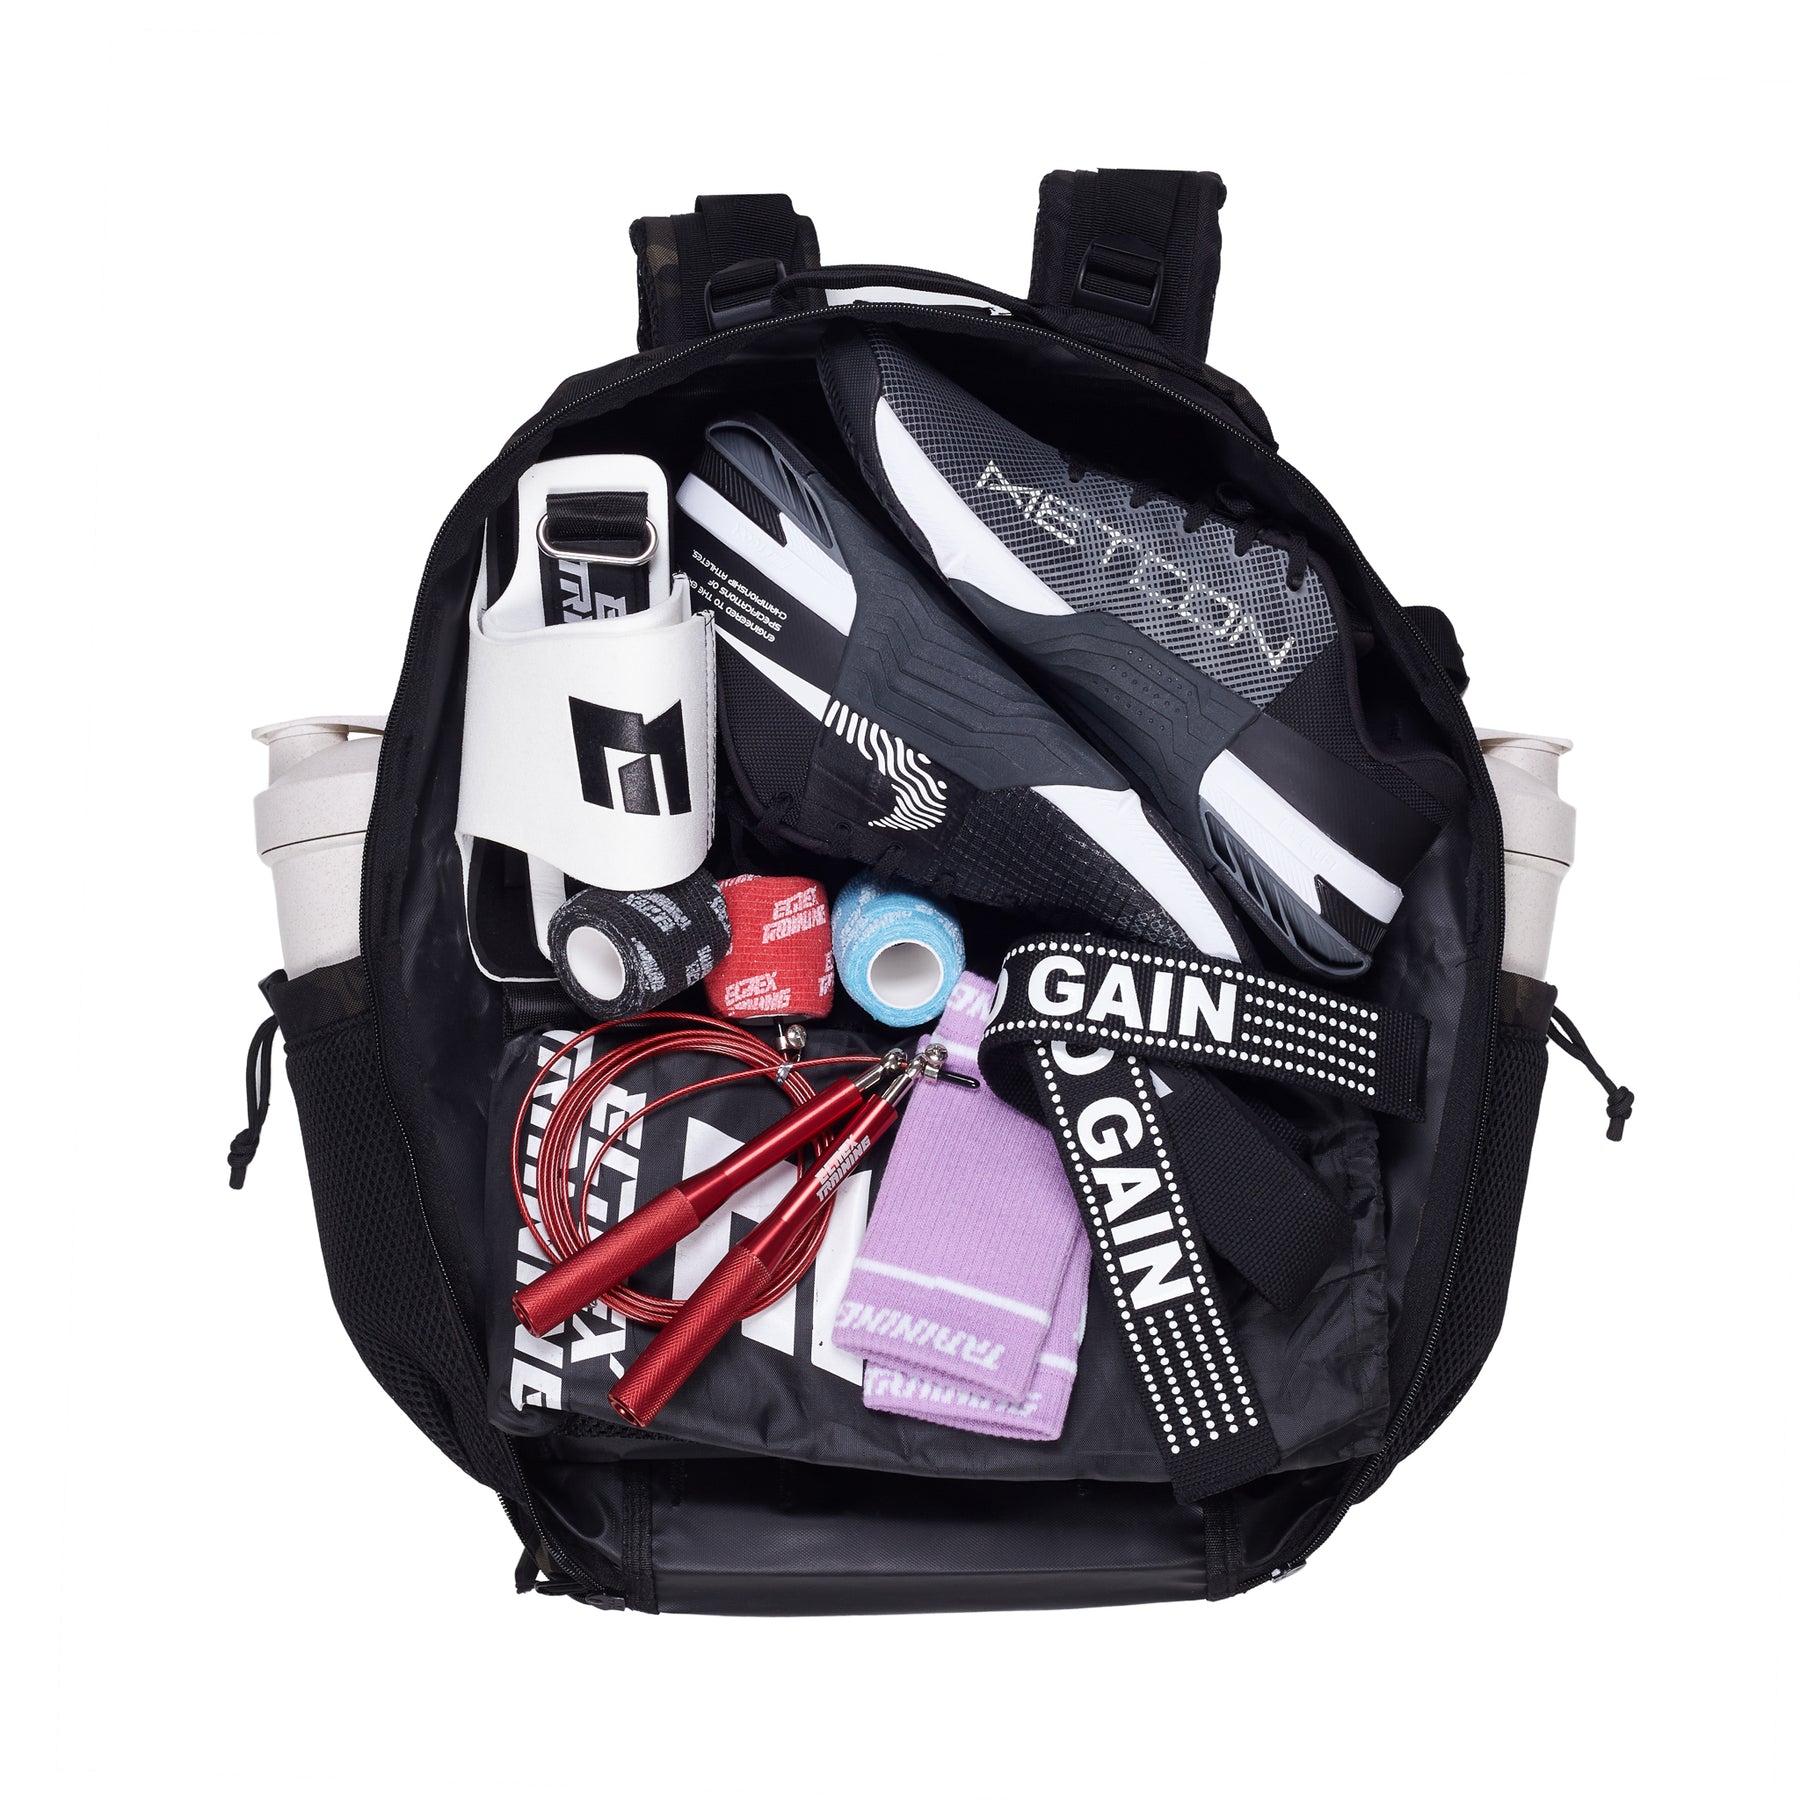 Reiserucksack mit Reißverschlusstaschen – Sportrucksack – Elitex Training